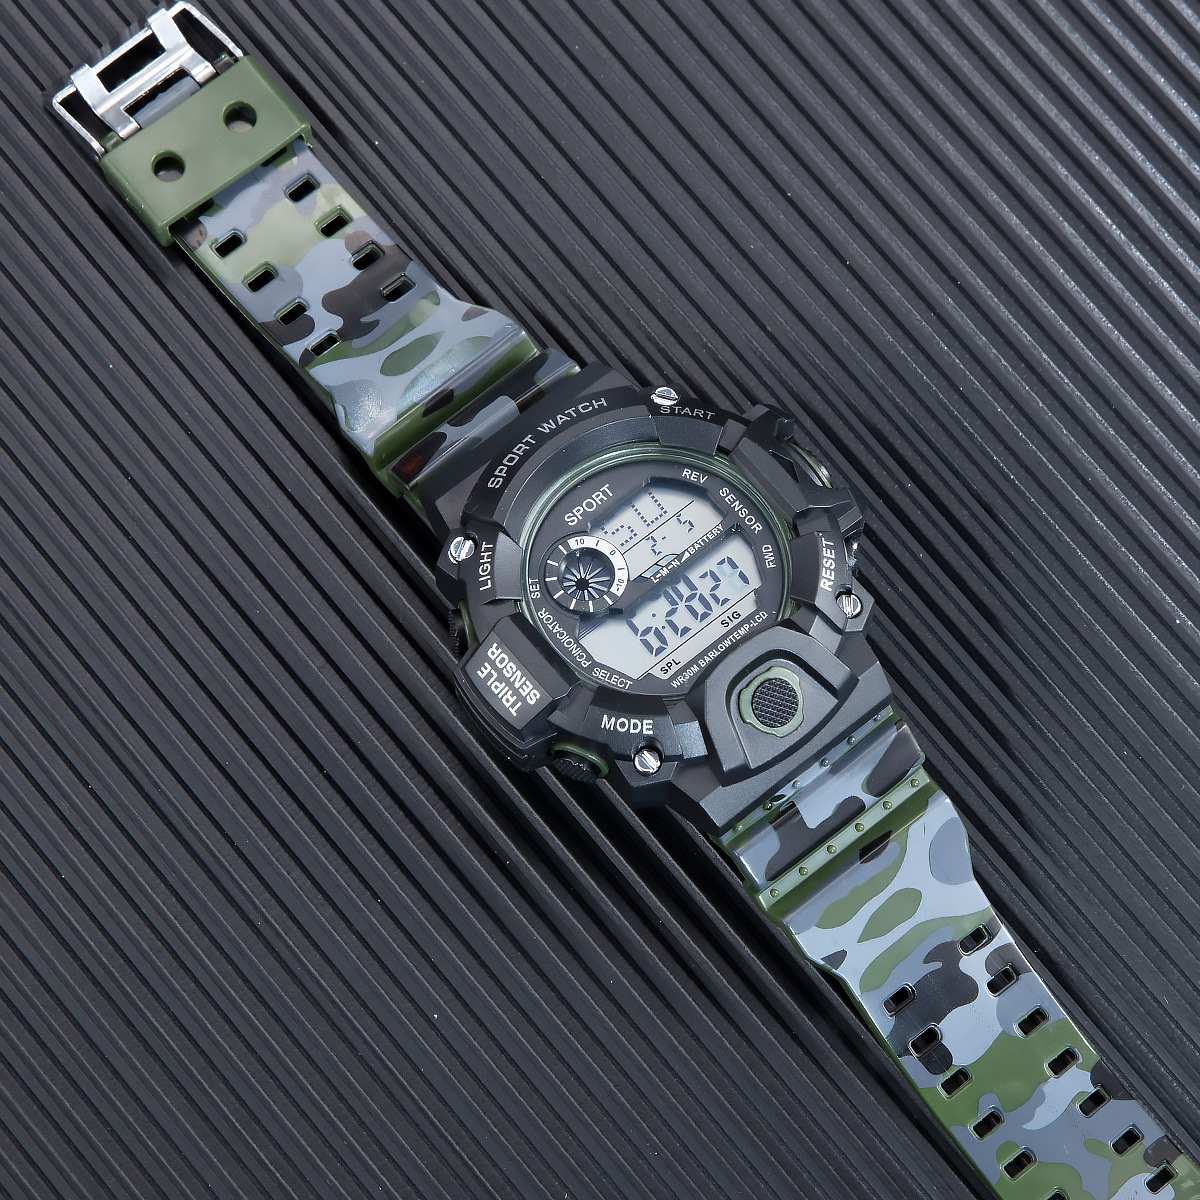 Đồng hồ điện tử nam KASAWI KB650 PHONG CÁCH QUÂN ĐỘI đèn led ban đêm Đồng hồ thời trang Mặt số lớn Đa chức năng Thể thao ngoài trời Đồng hồ điện tử kỹ thuật số